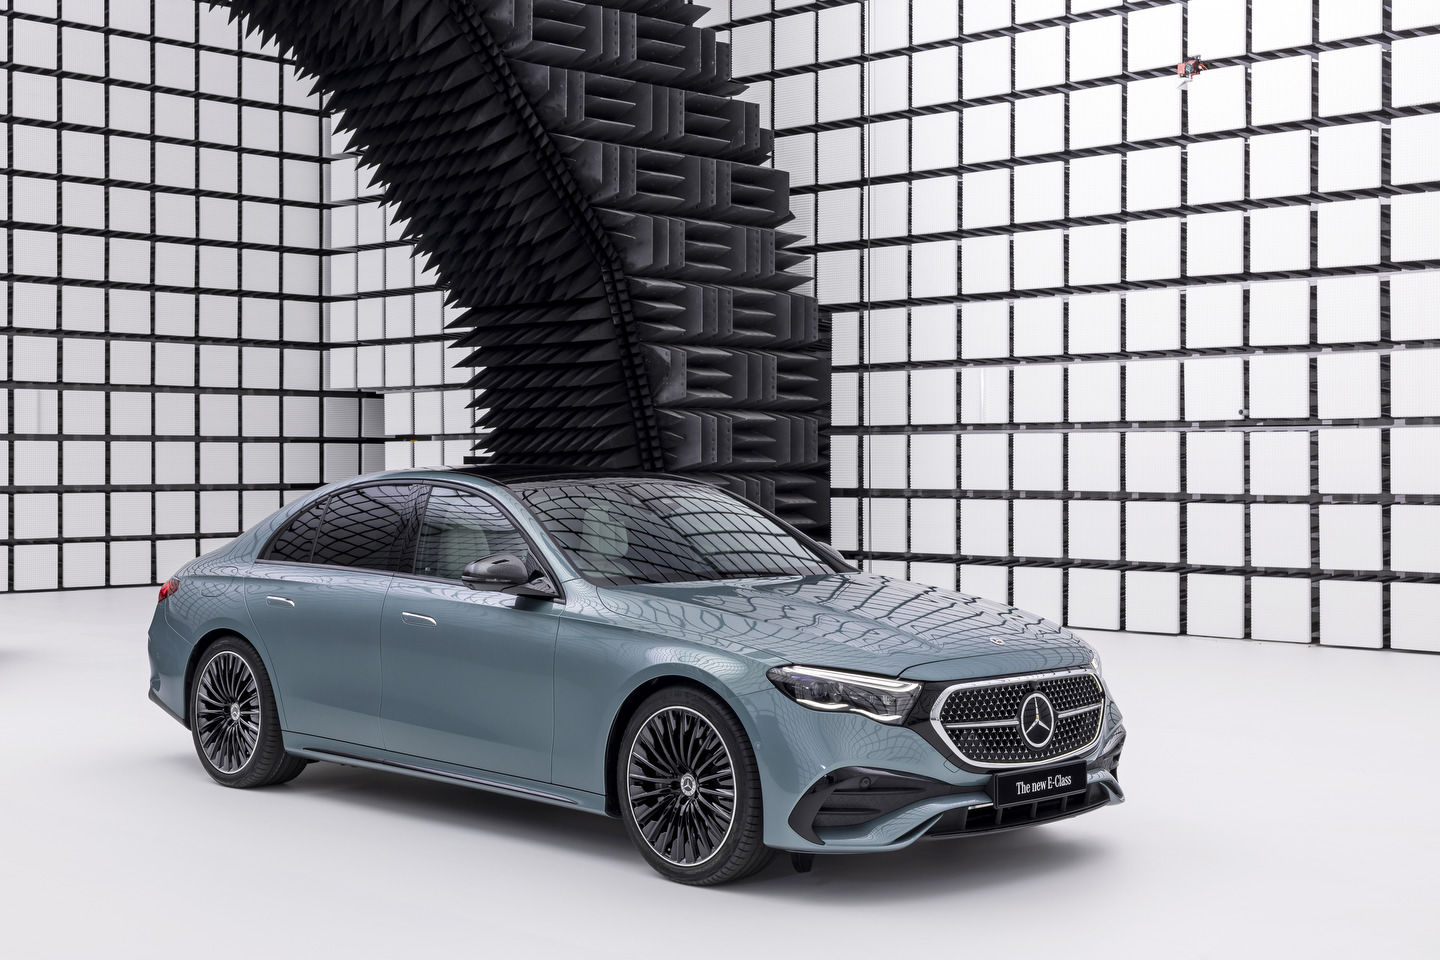 New Mercedes-Benz C-Class Features Next-Gen MBUX